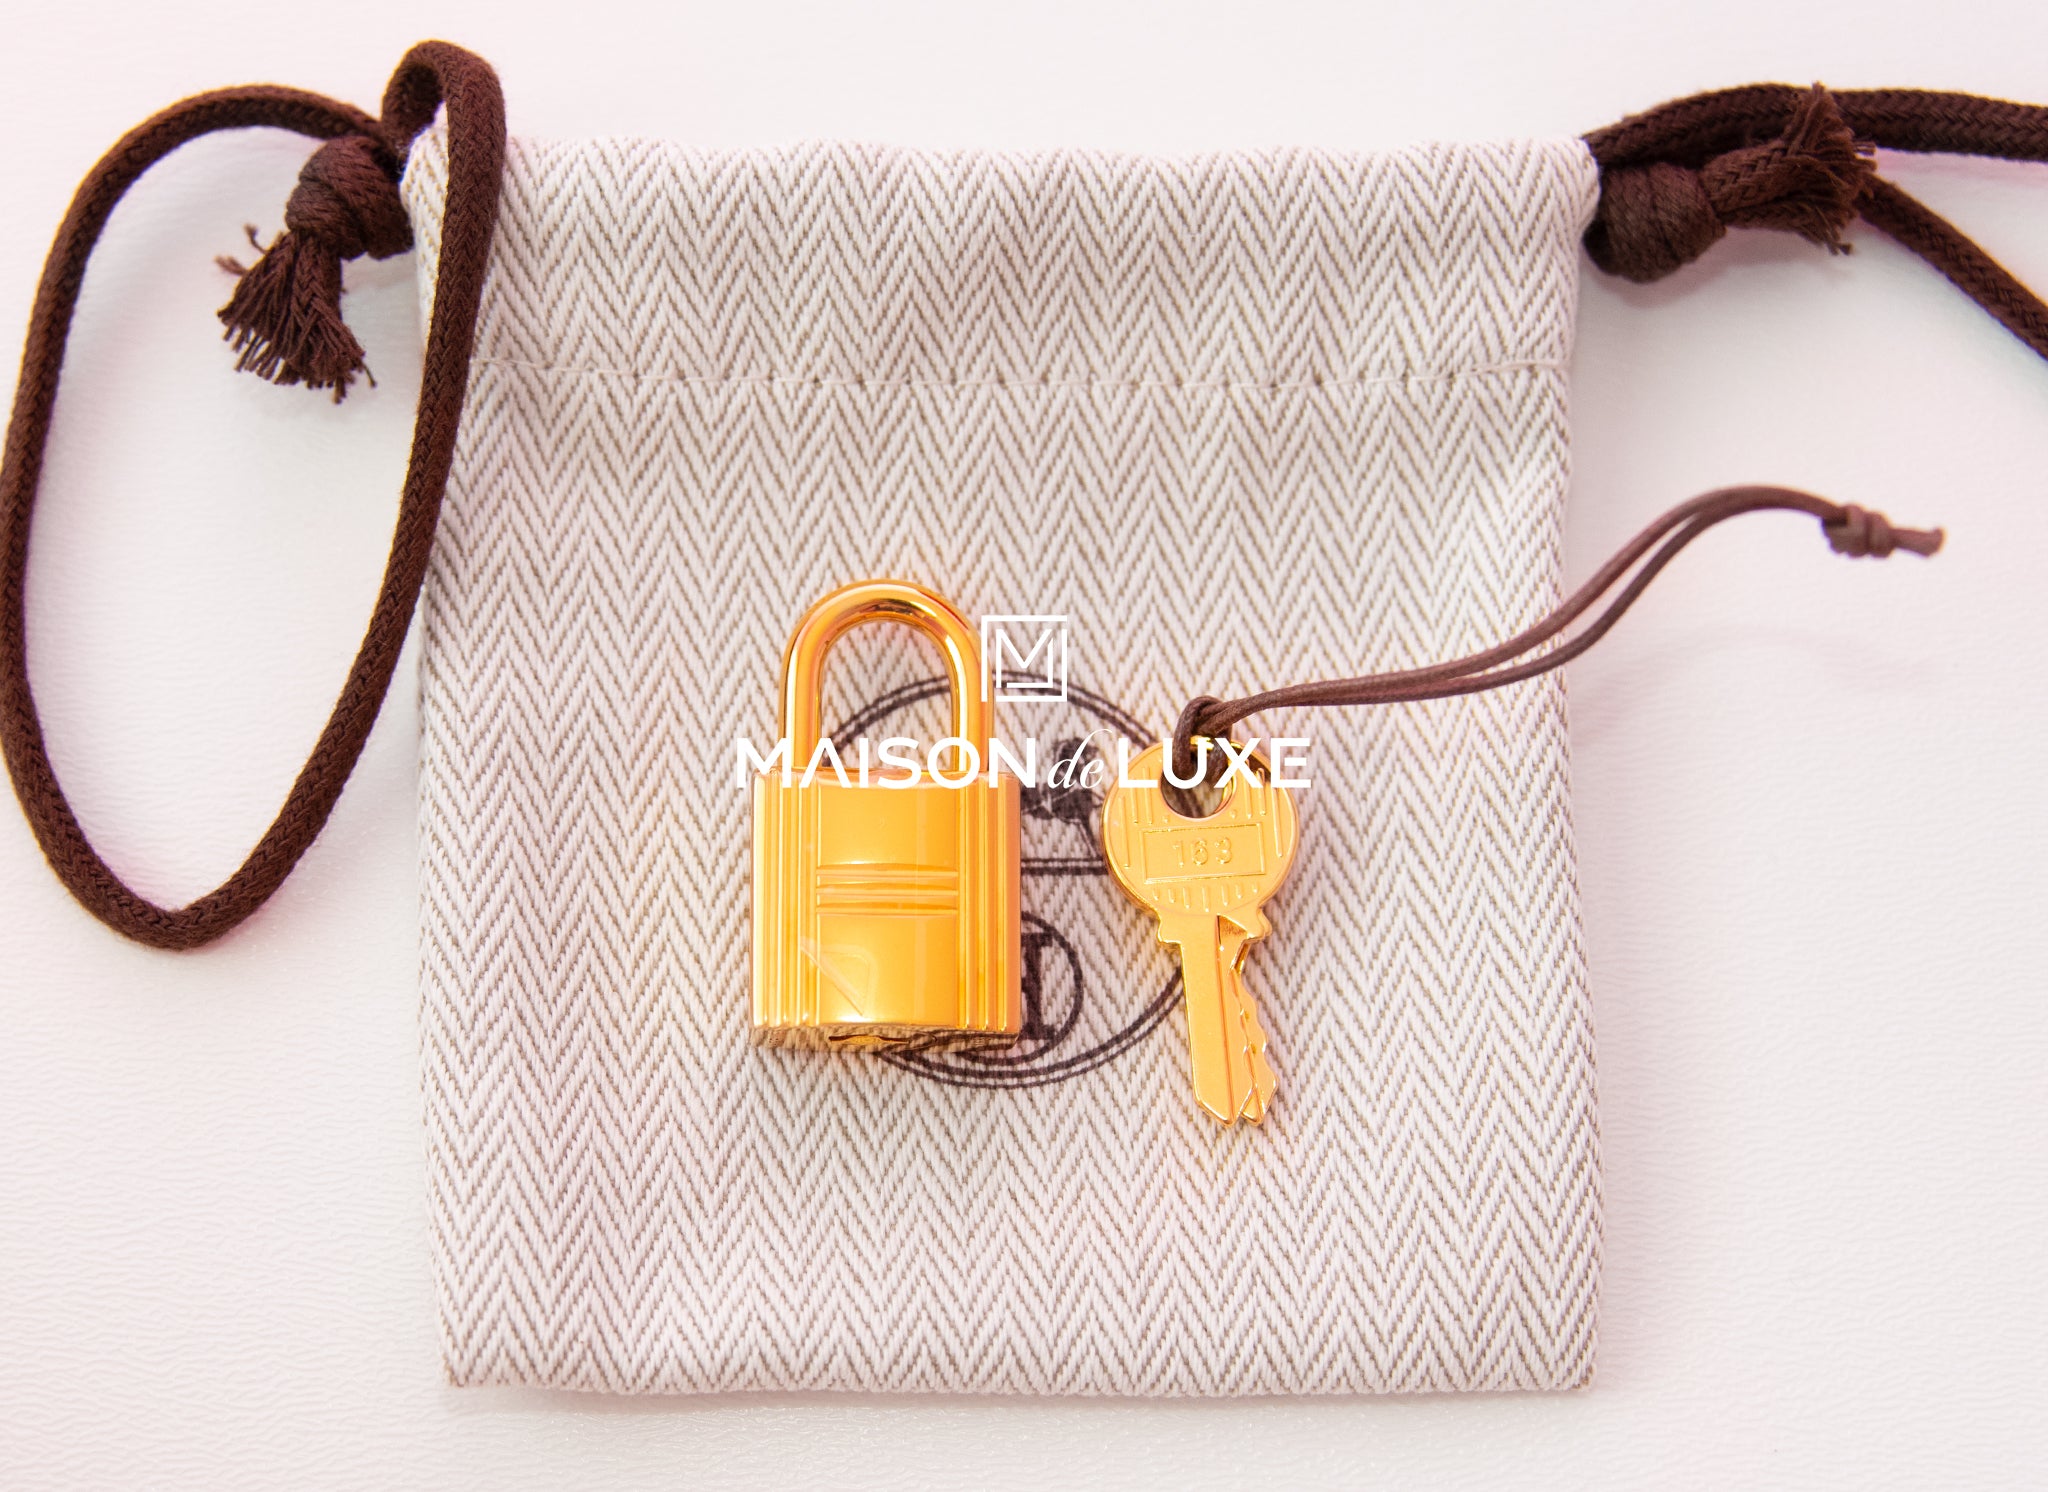 Hermes Birkin Handbag Rouge De Coeur Clemence with Gold Hardware